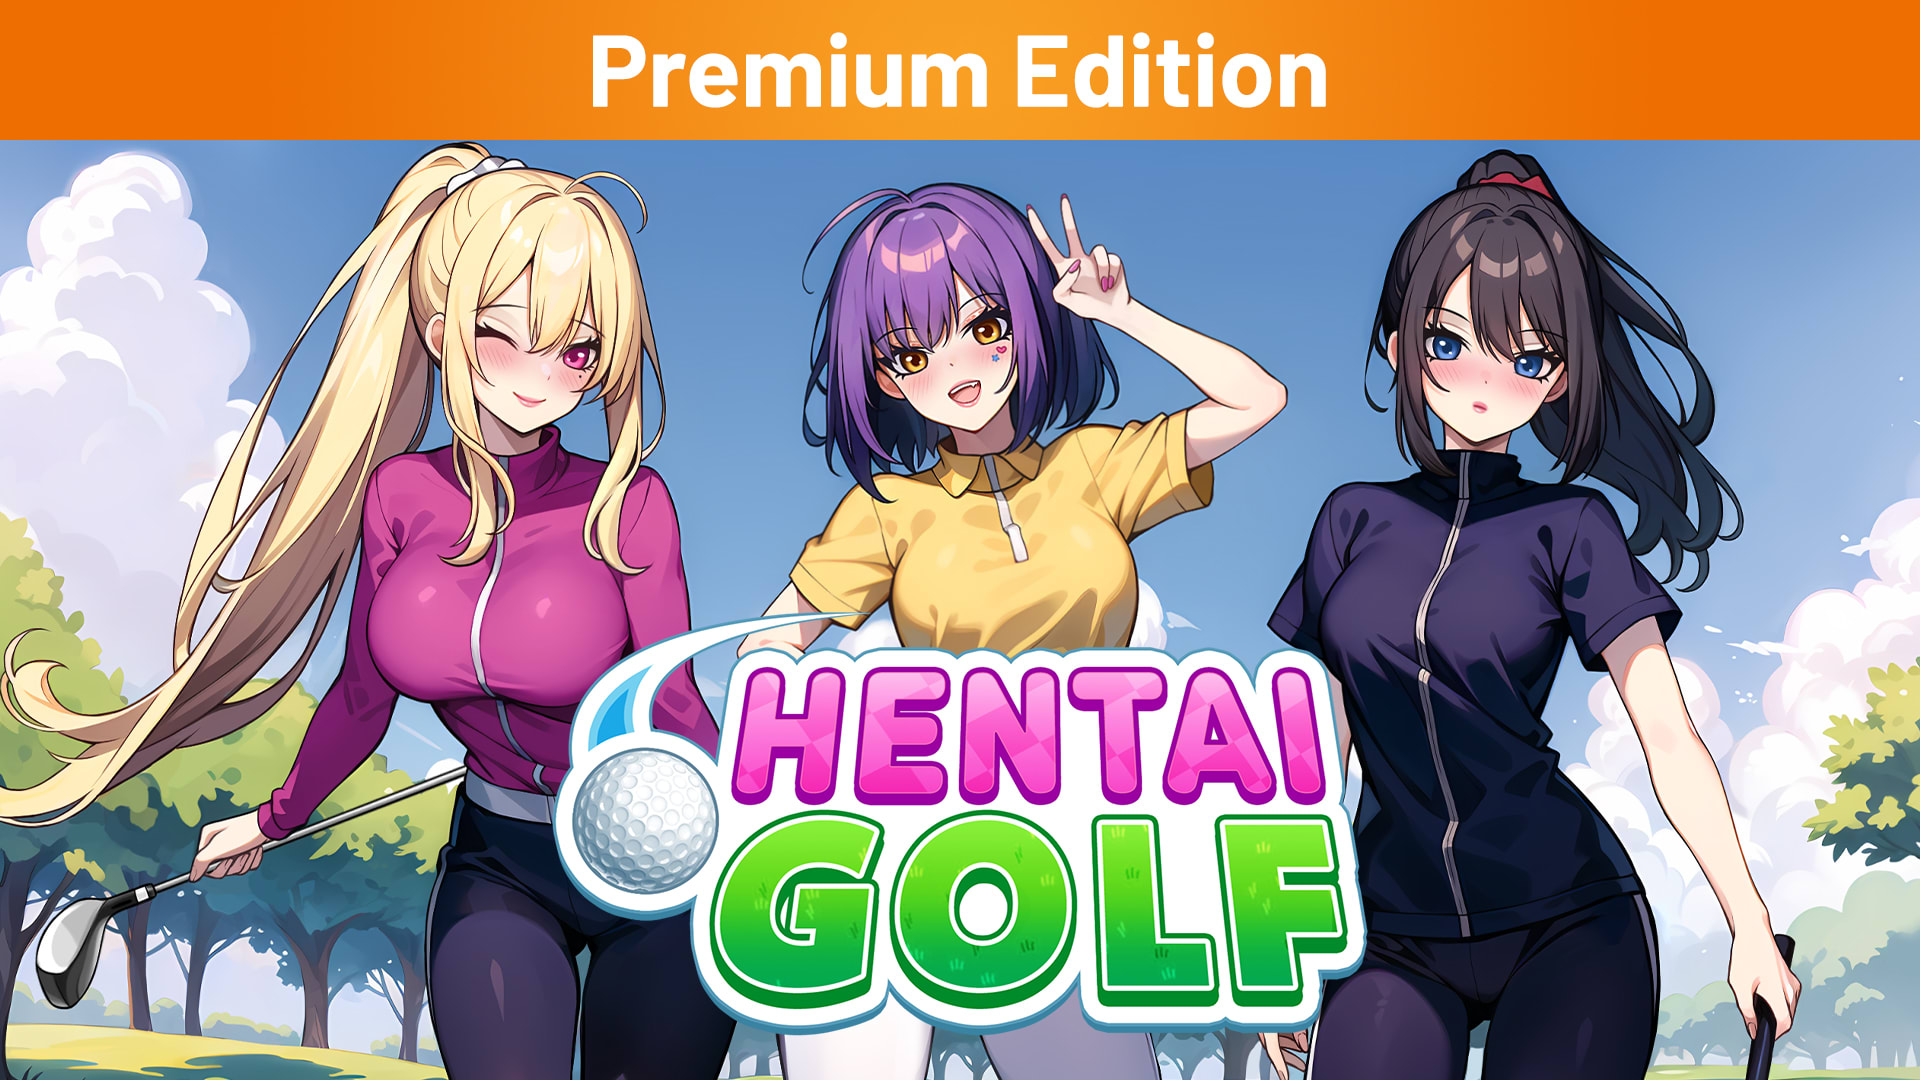 Hentai Golf Premium Edition